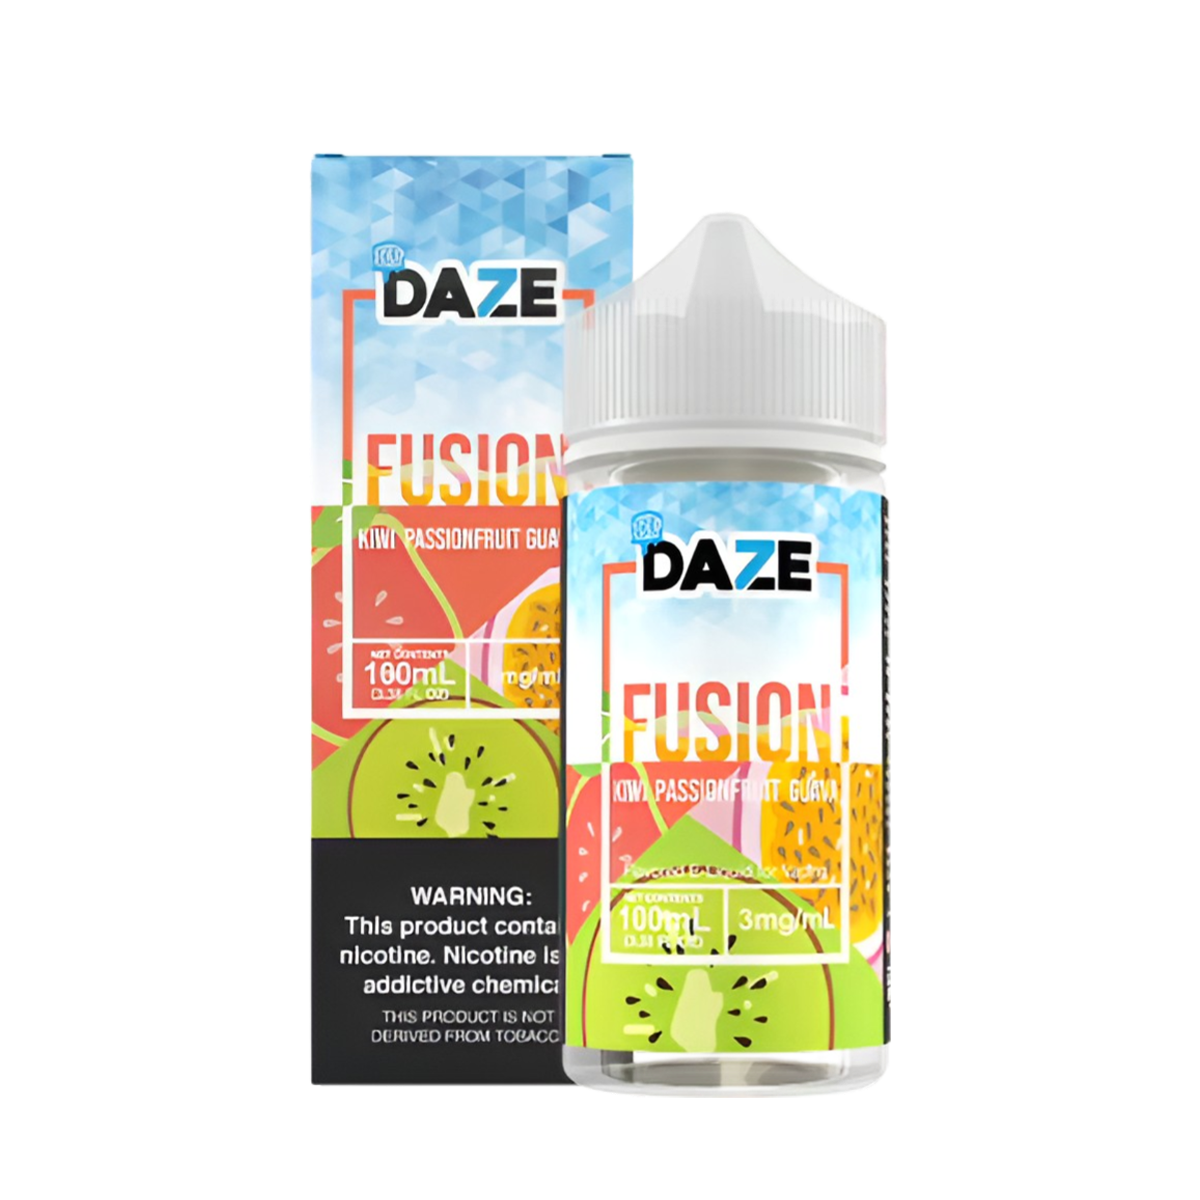 7 Daze Fusion Iced Freebase Vape Juice 0 Mg 100 ML Kiwi Passionfruit Guava Iced